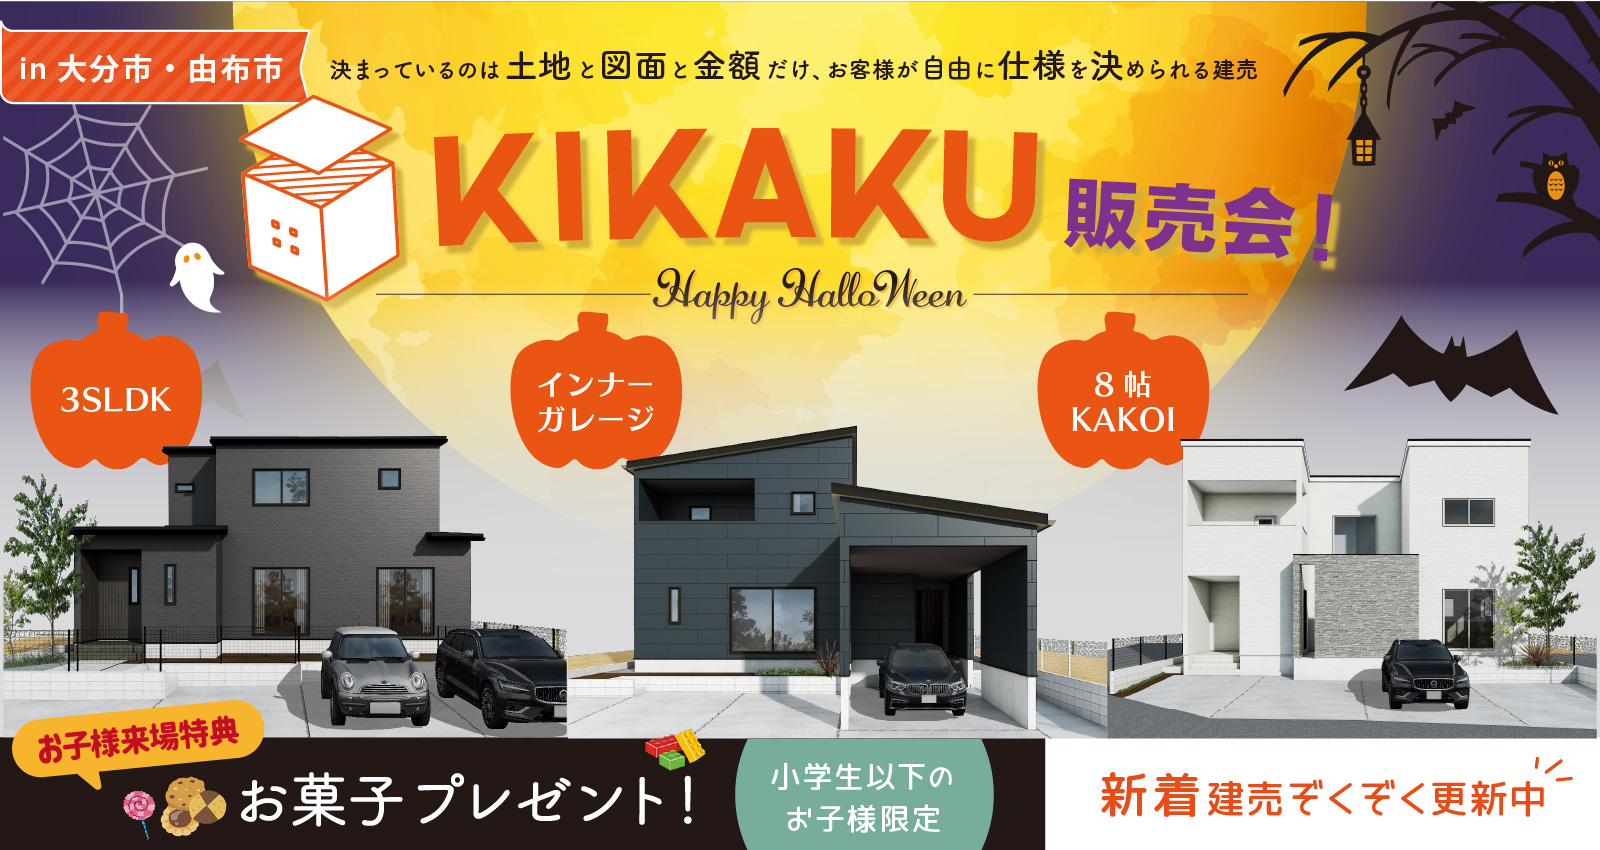 【新着】KIKAKU販売会を開催！平屋物件も新登場